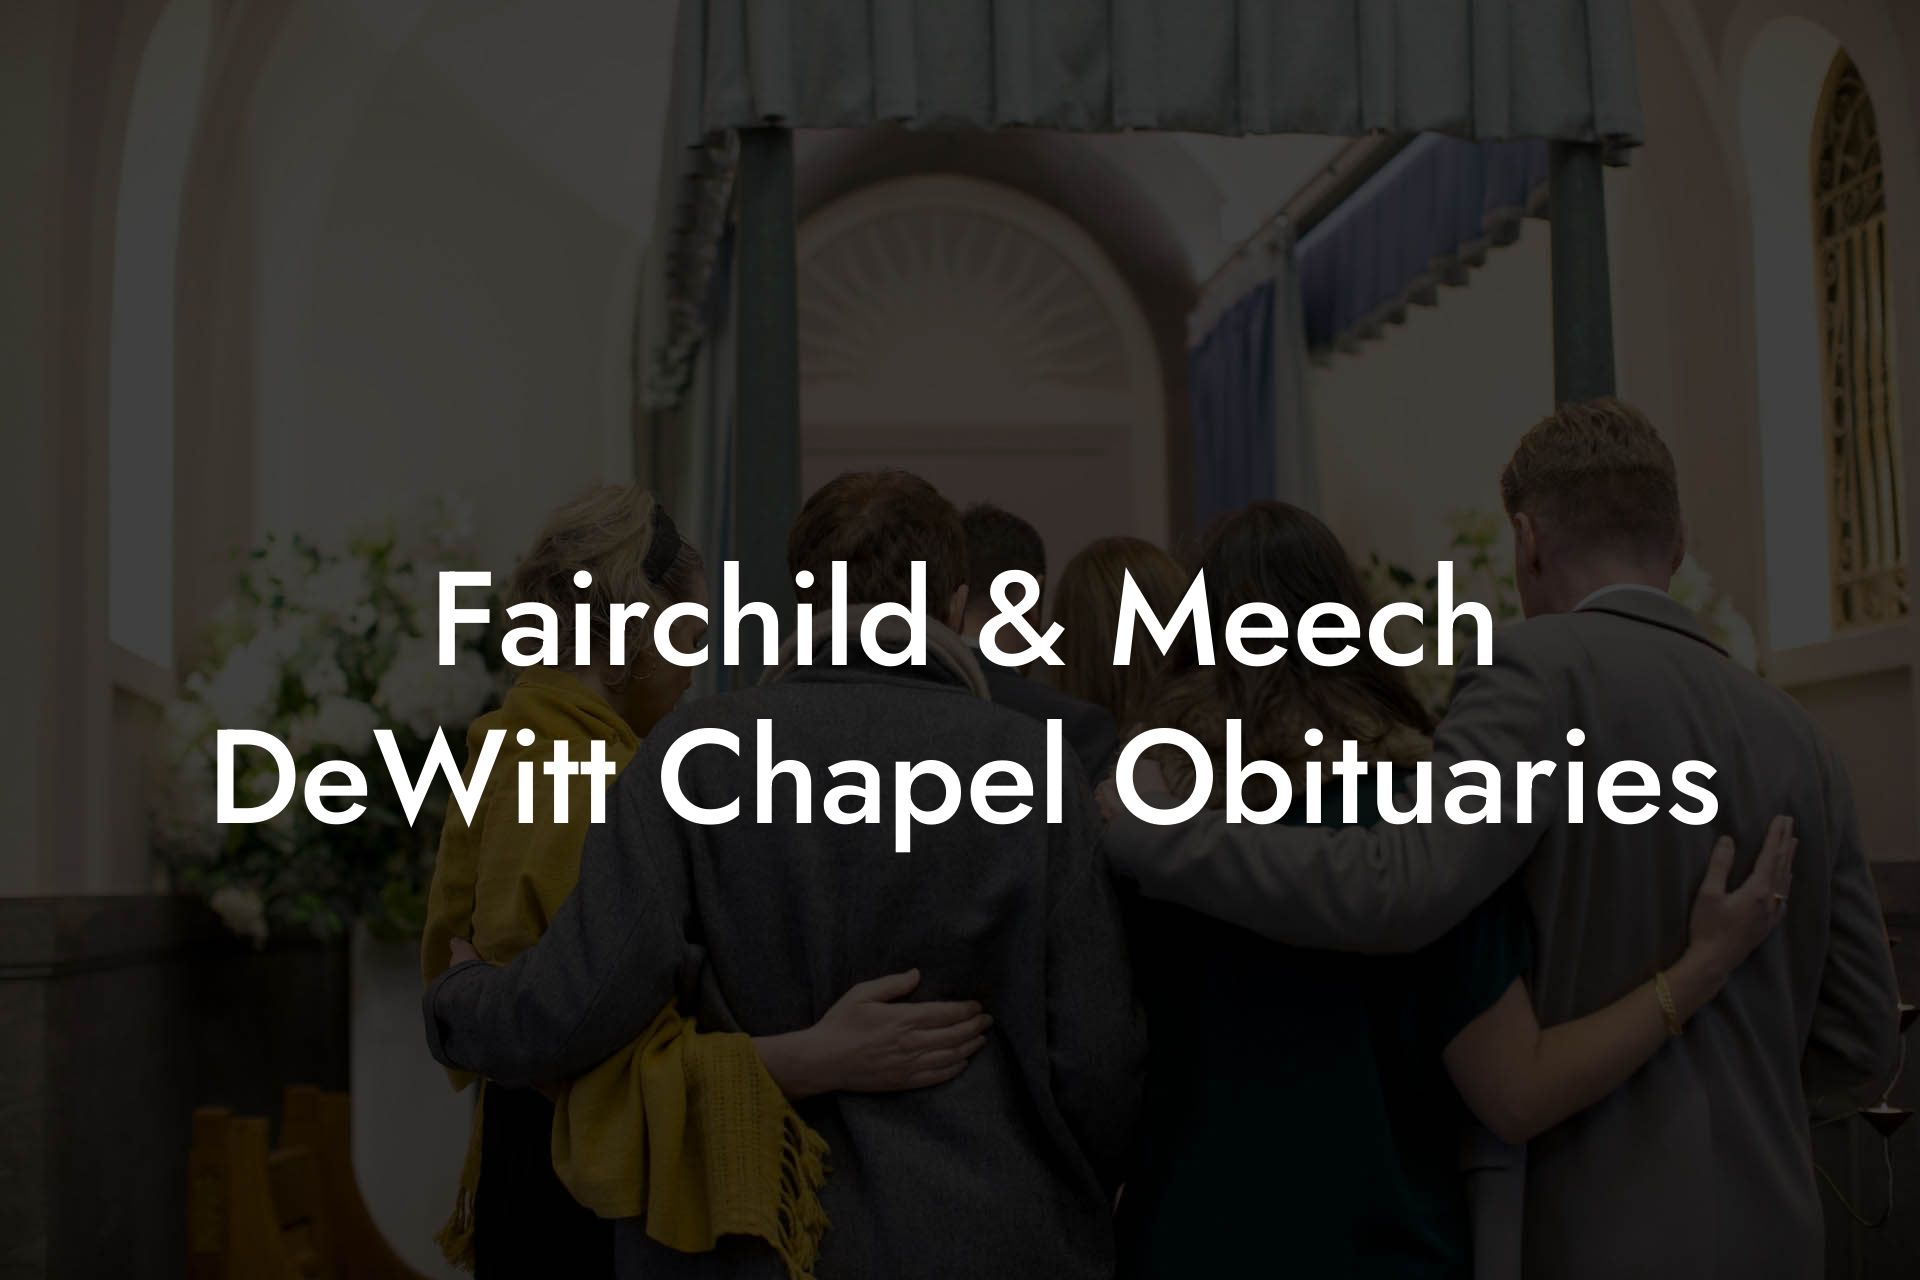 Fairchild & Meech DeWitt Chapel Obituaries